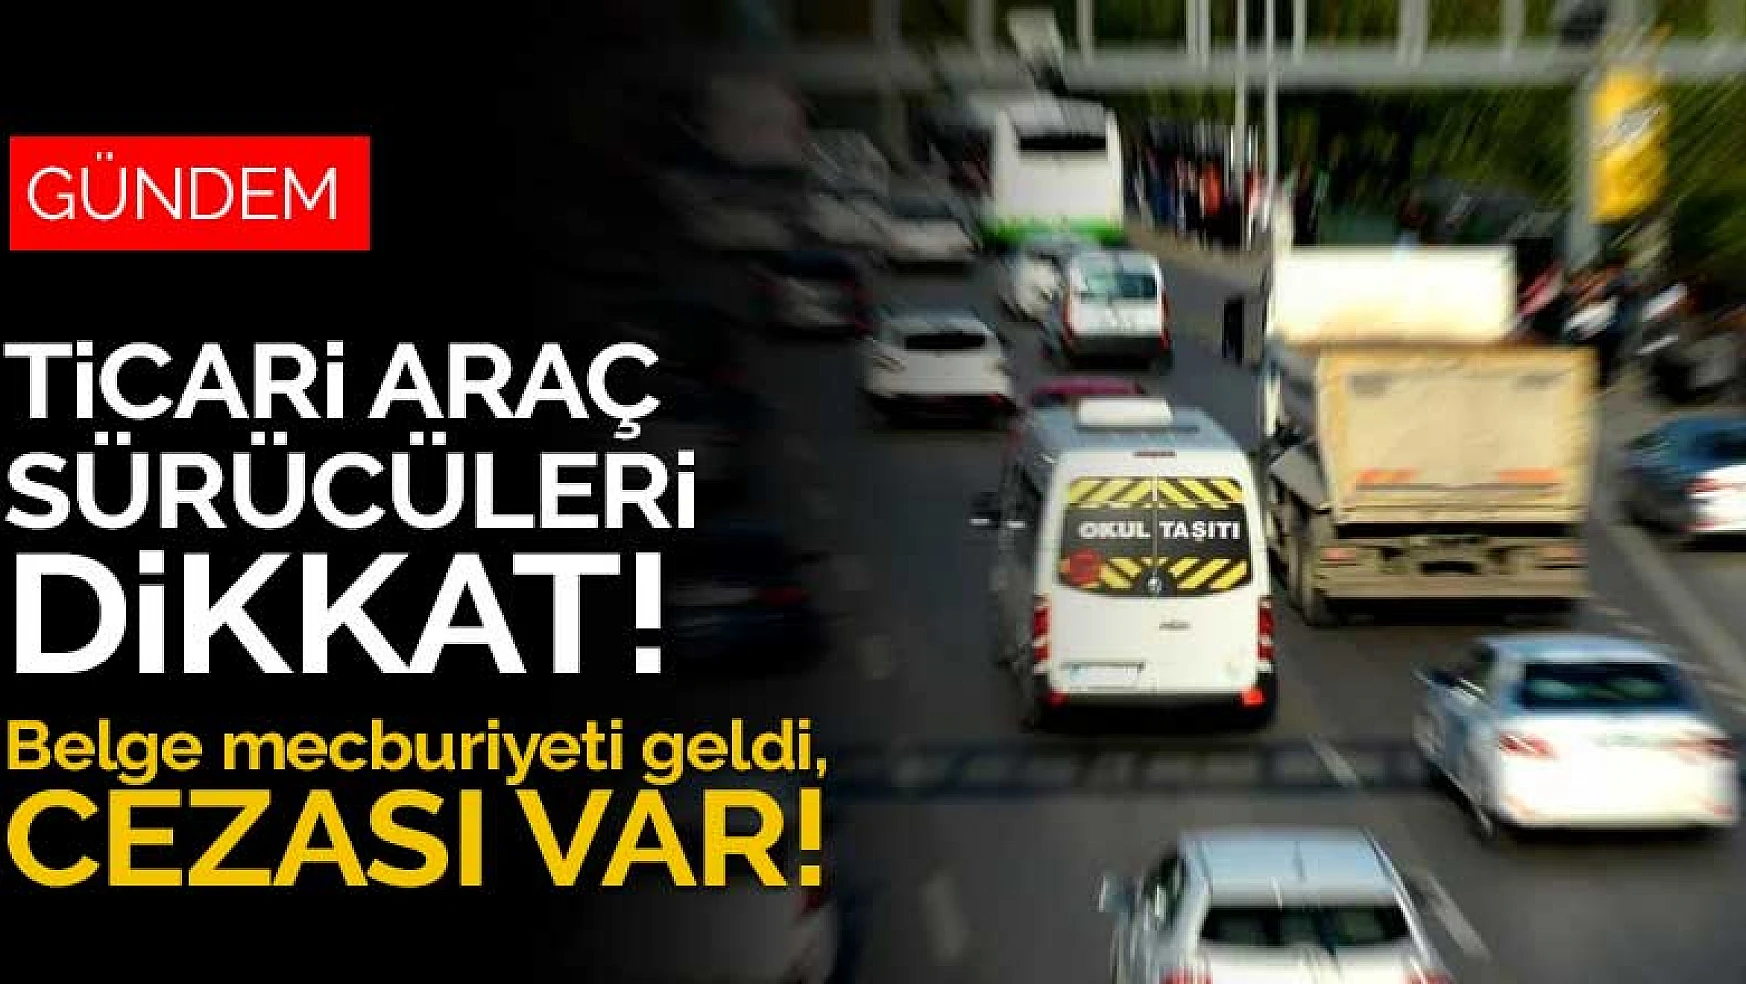 Konya'daki ticari araç sürücüleri dikkat! Belge mecburiyeti geldi, cezası var